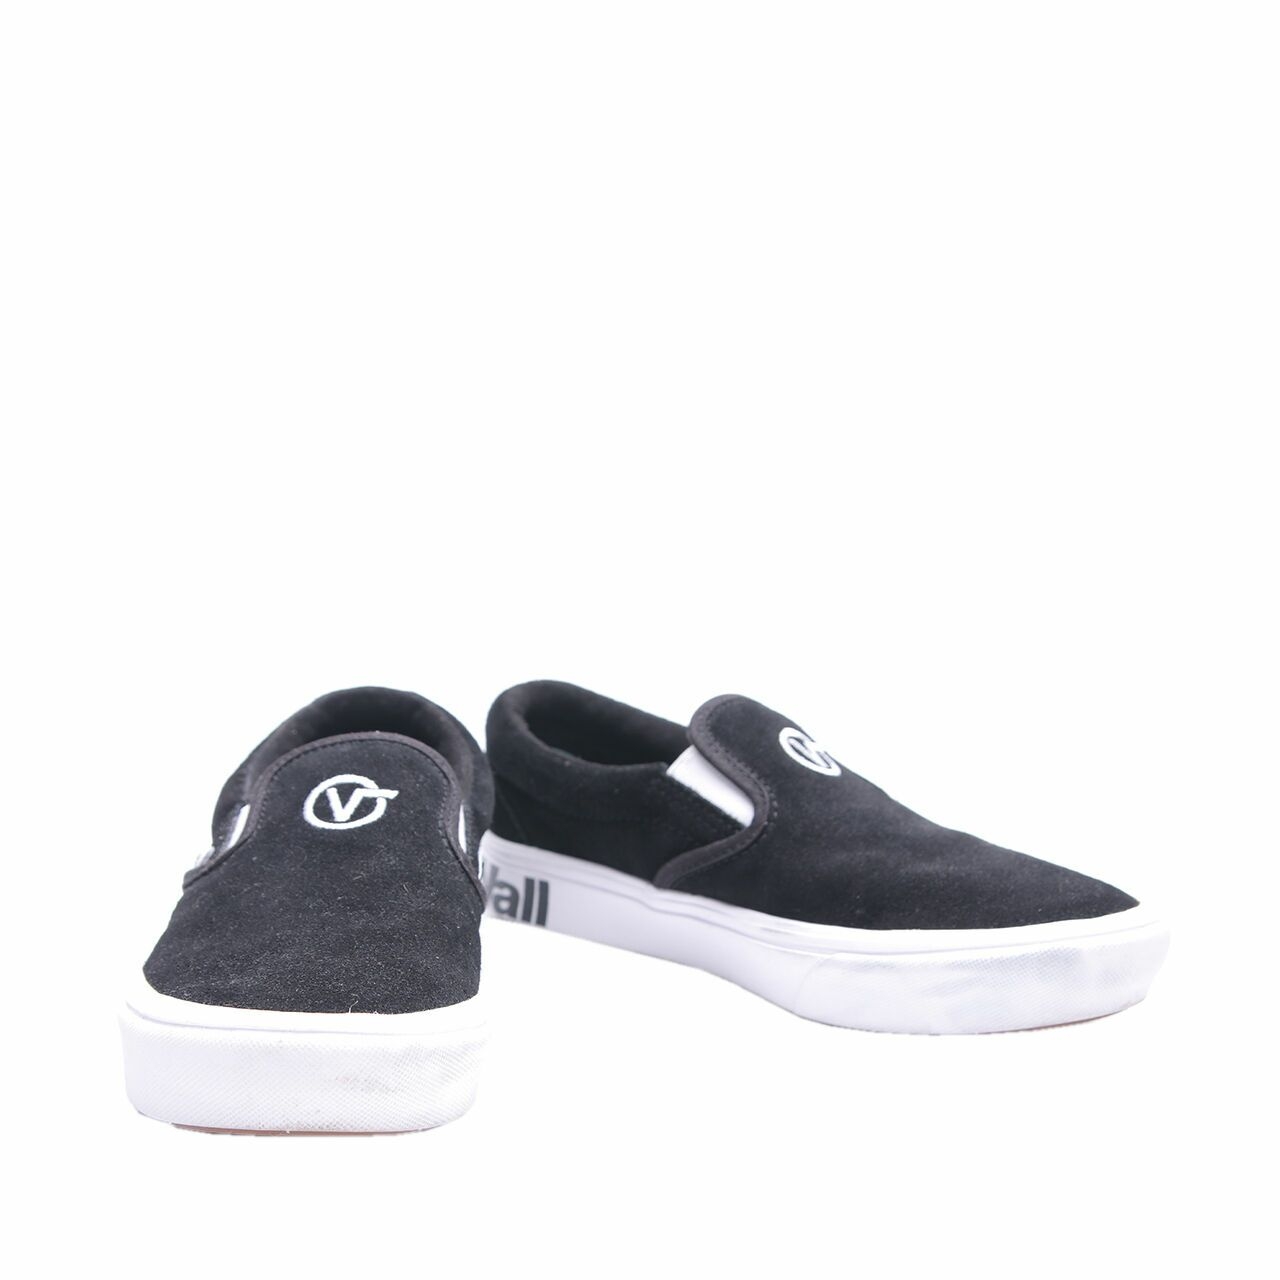 Vans Slip On ComyCush Black & White Sneakers